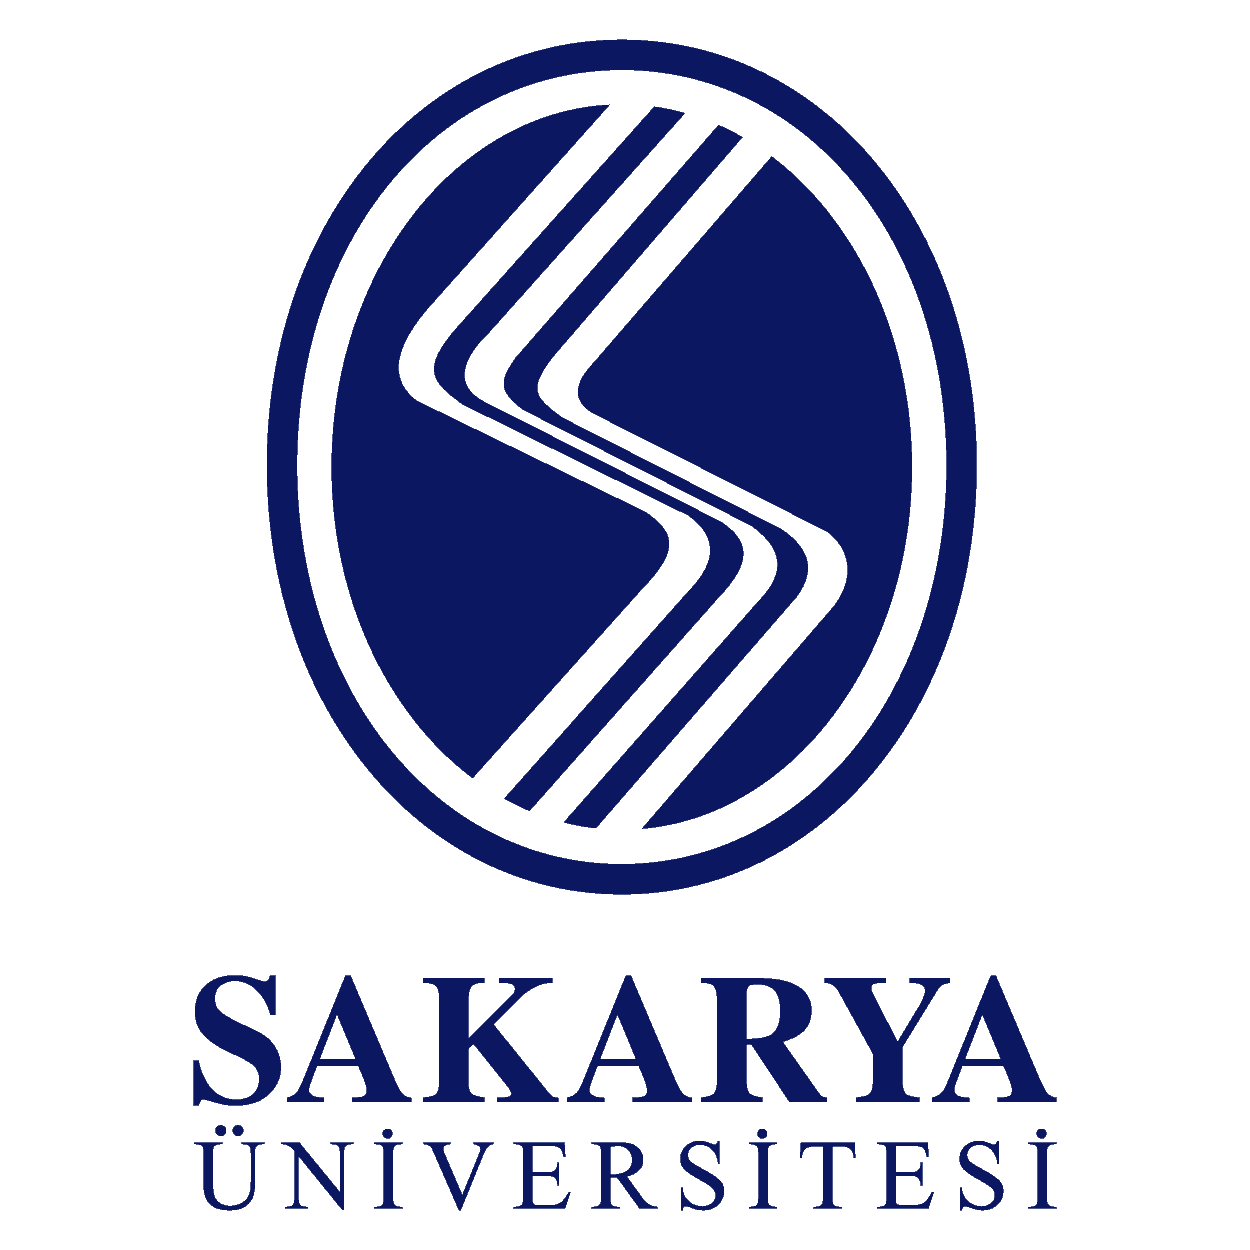 Sakarya Üniversitesi Logo png